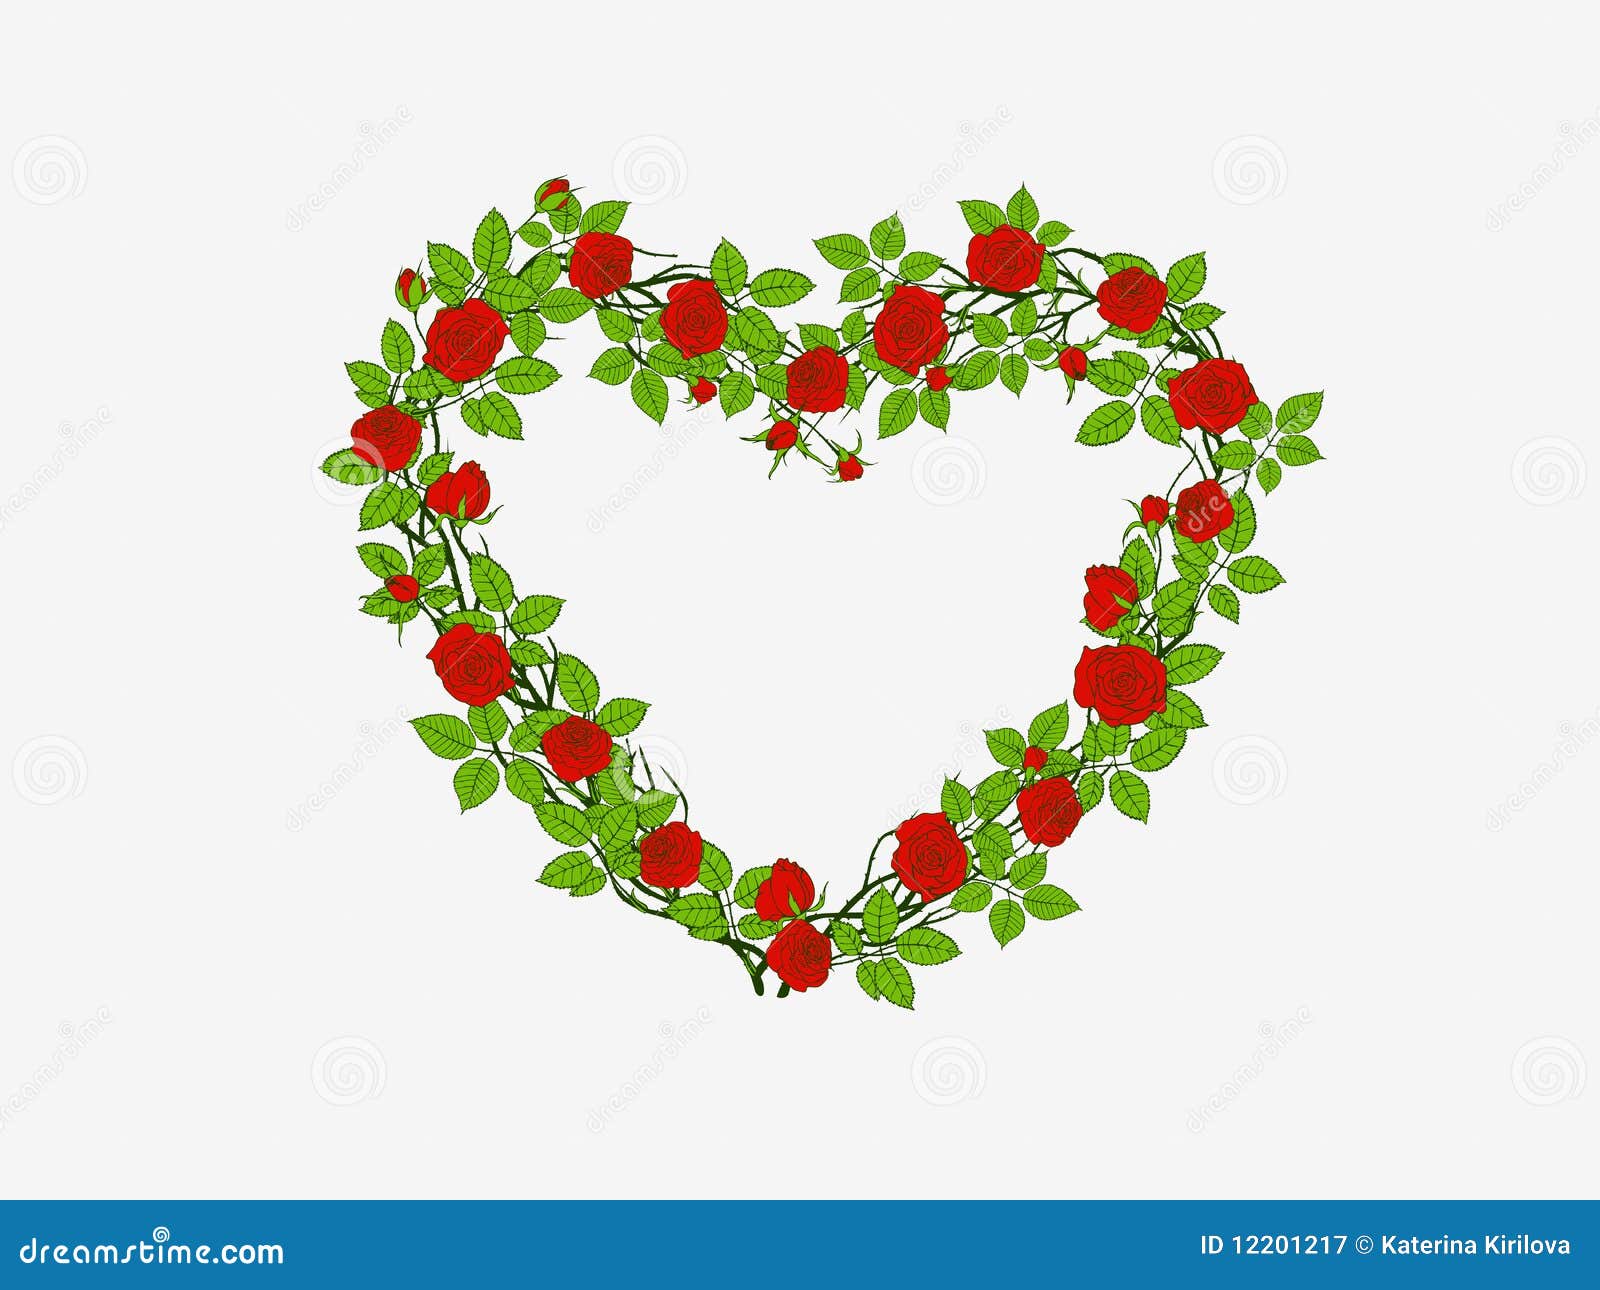 Hart van rozen. Rode rozen die hartvorm vormen